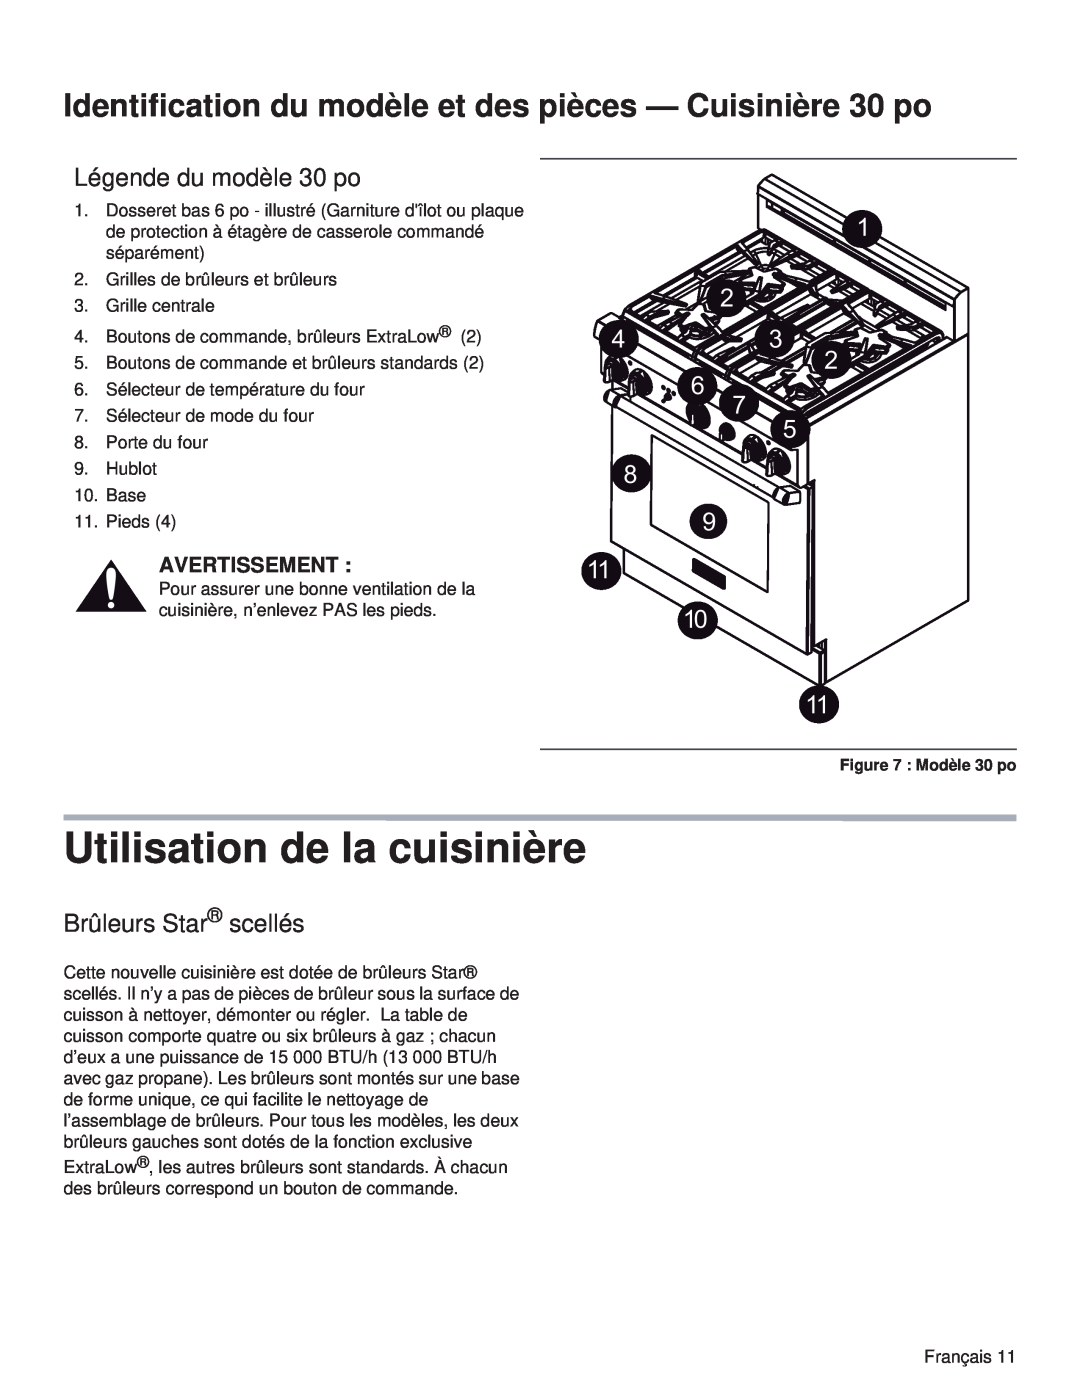 Thermador PRL30 Utilisation de la cuisinière, Identification du modèle et des pièces - Cuisinière 30 po, Avertissement 